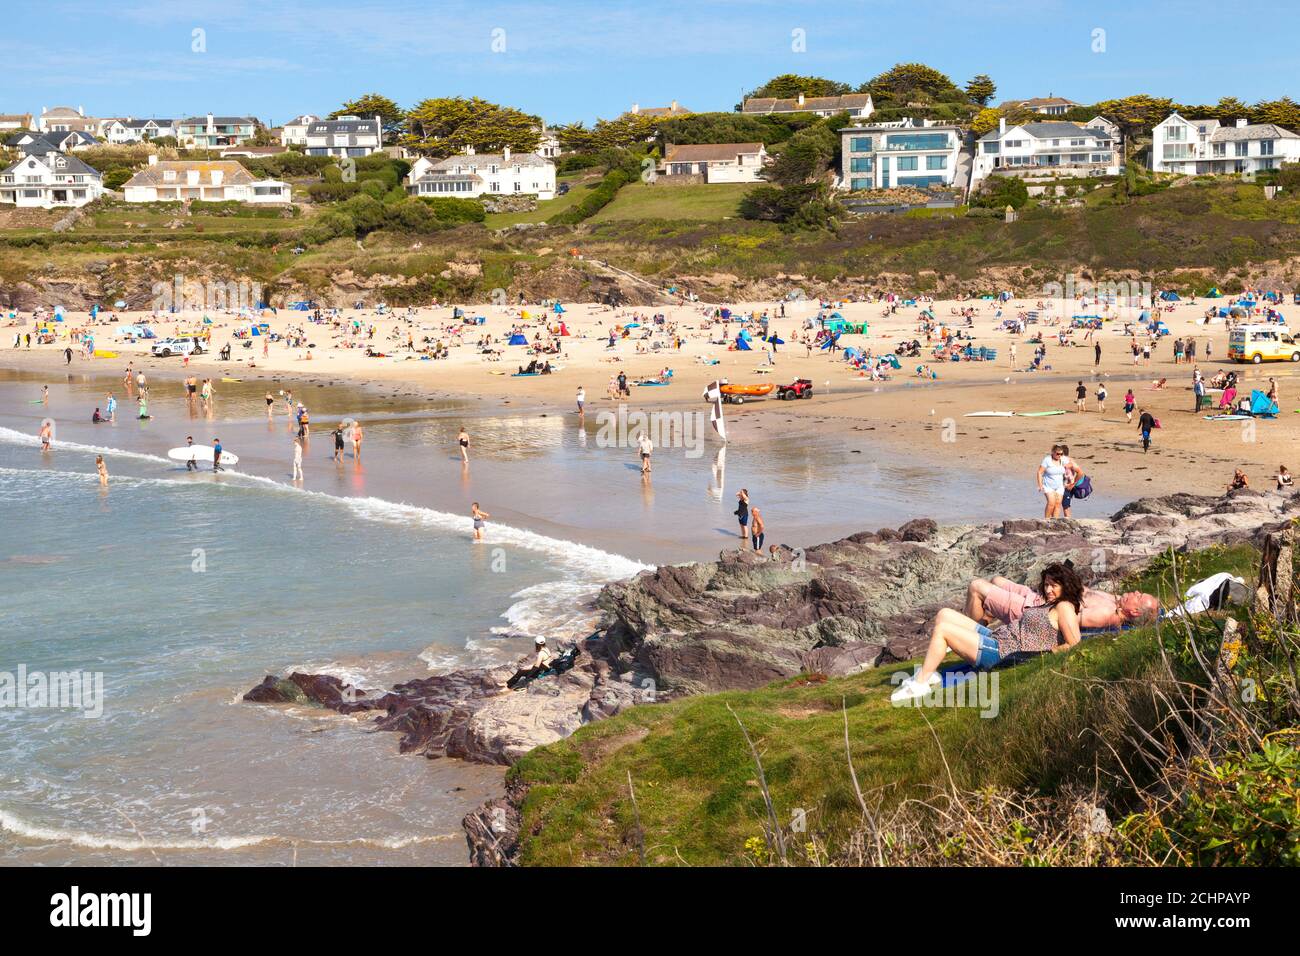 Polzeath, Cornwall, Reino Unido. 14 de septiembre de 2020. Los turistas disfrutan de un cálido sol en la playa de Polzeath, en la costa atlántica del norte de Cornwall. Foto de stock